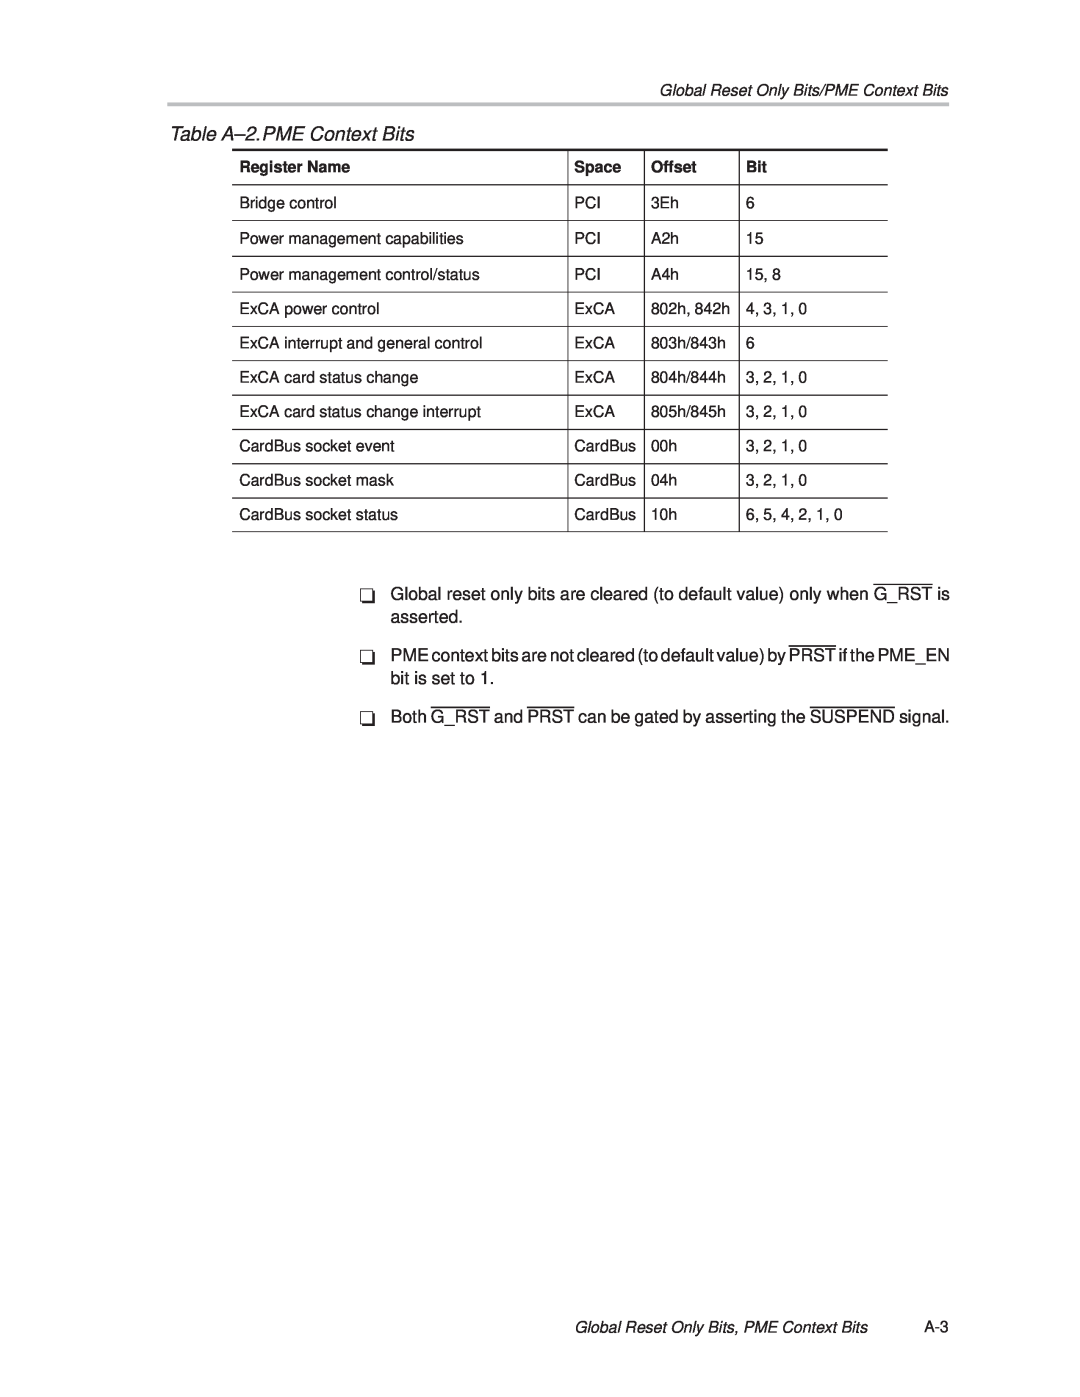 Texas Instruments PCI445X manual Table A±2.PME Context Bits 